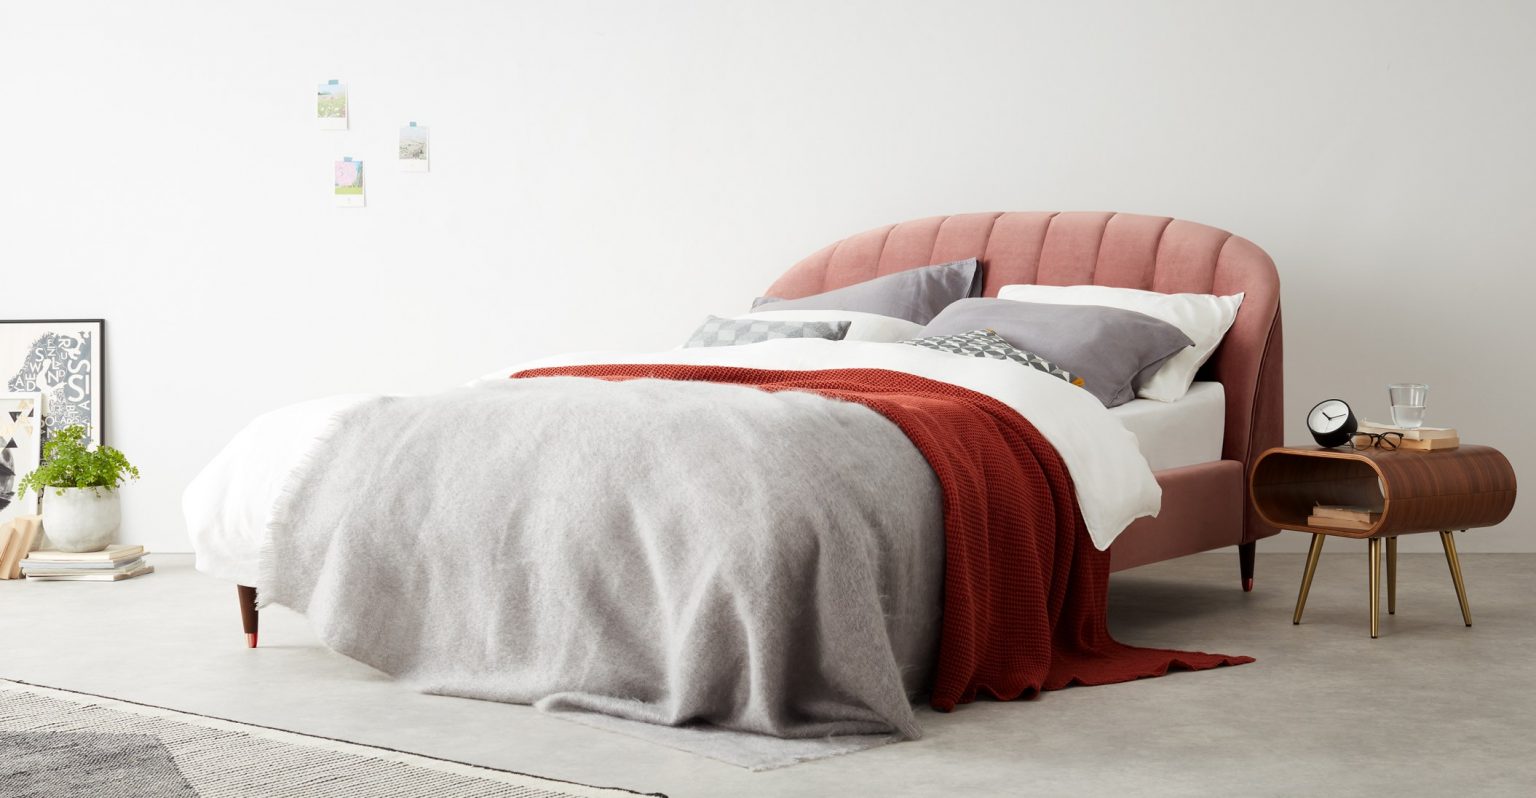 mattress online.co.uk review